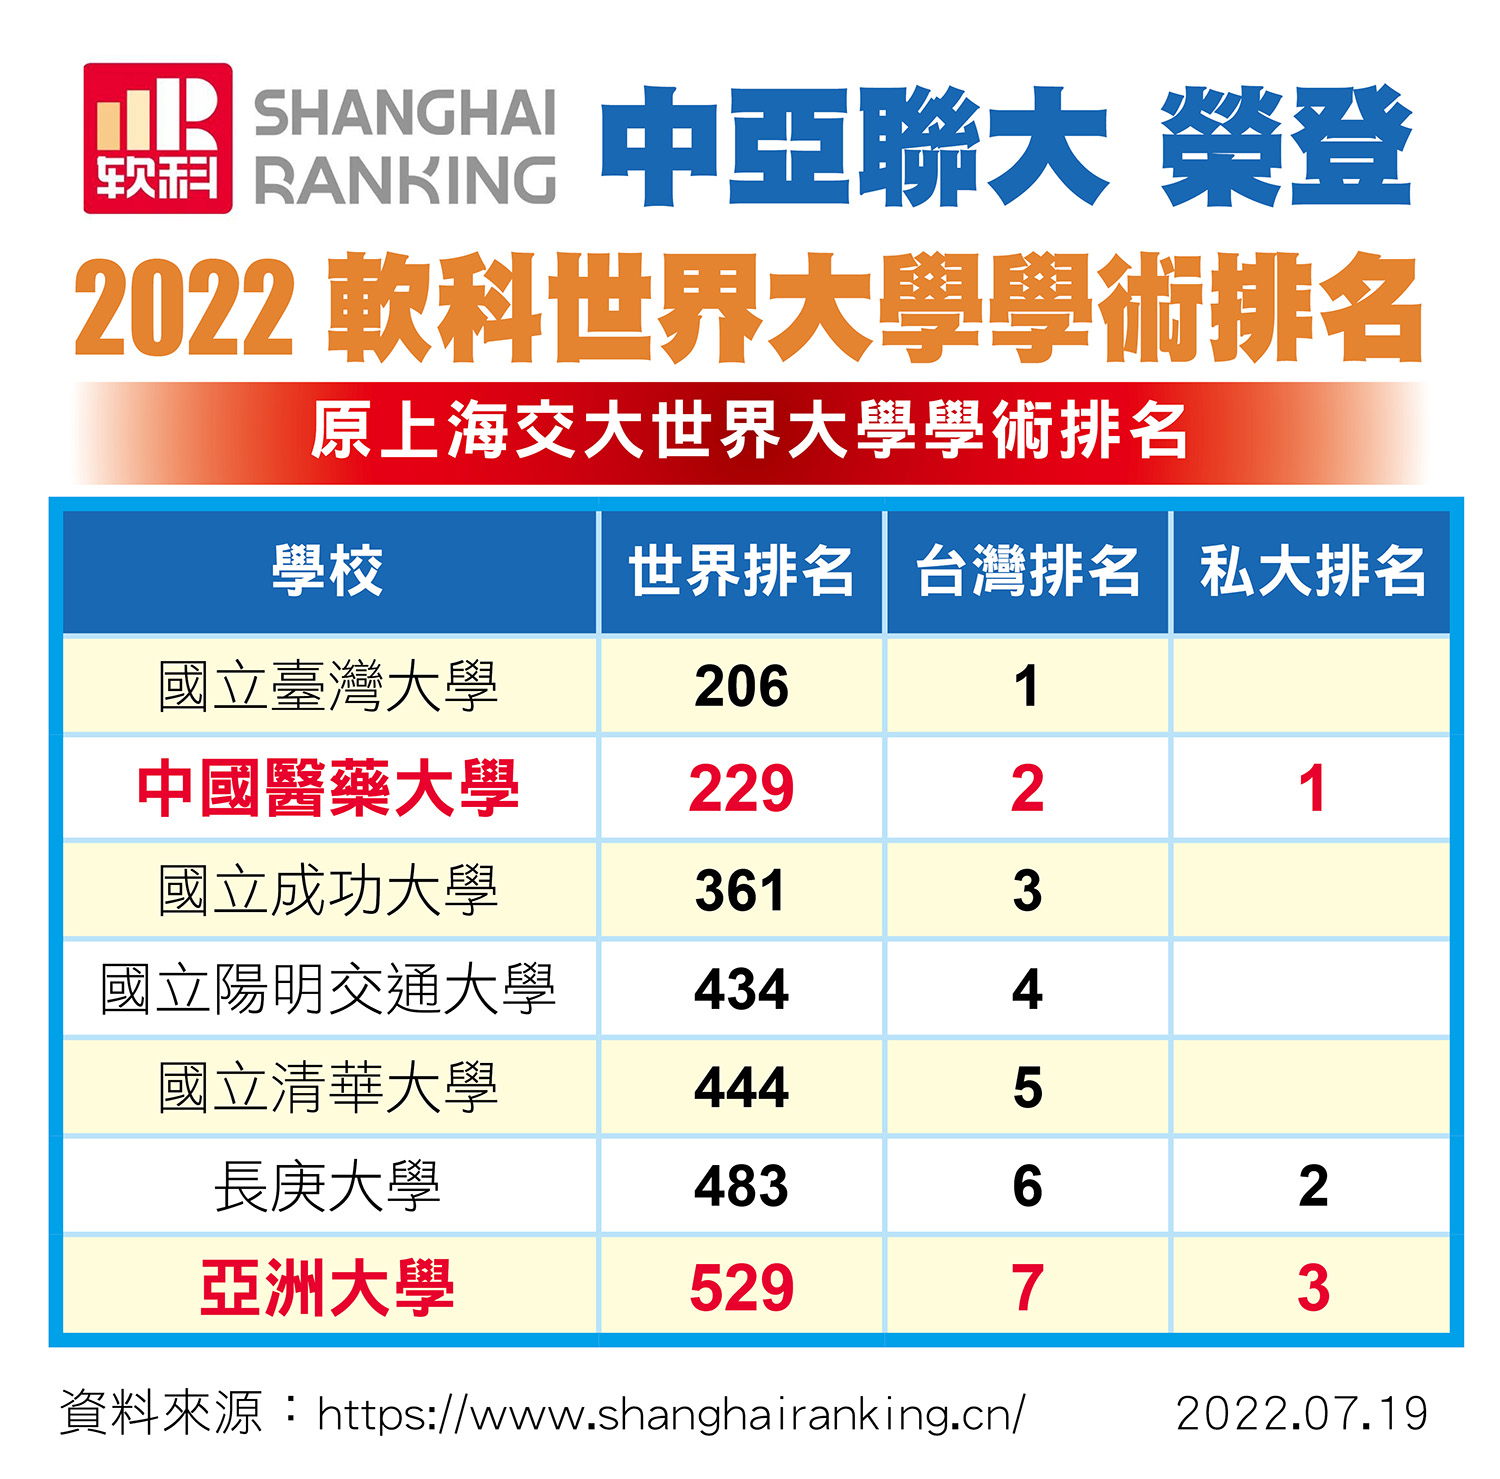 圖為上海軟科世界大學「2022世界大學學術排名」(ARWU)公布，「中亞聯大」中醫大全球第229名，全台第2，私大第1名；亞大全球529名、全台第7名、私大第3名、非醫學類私大第1名